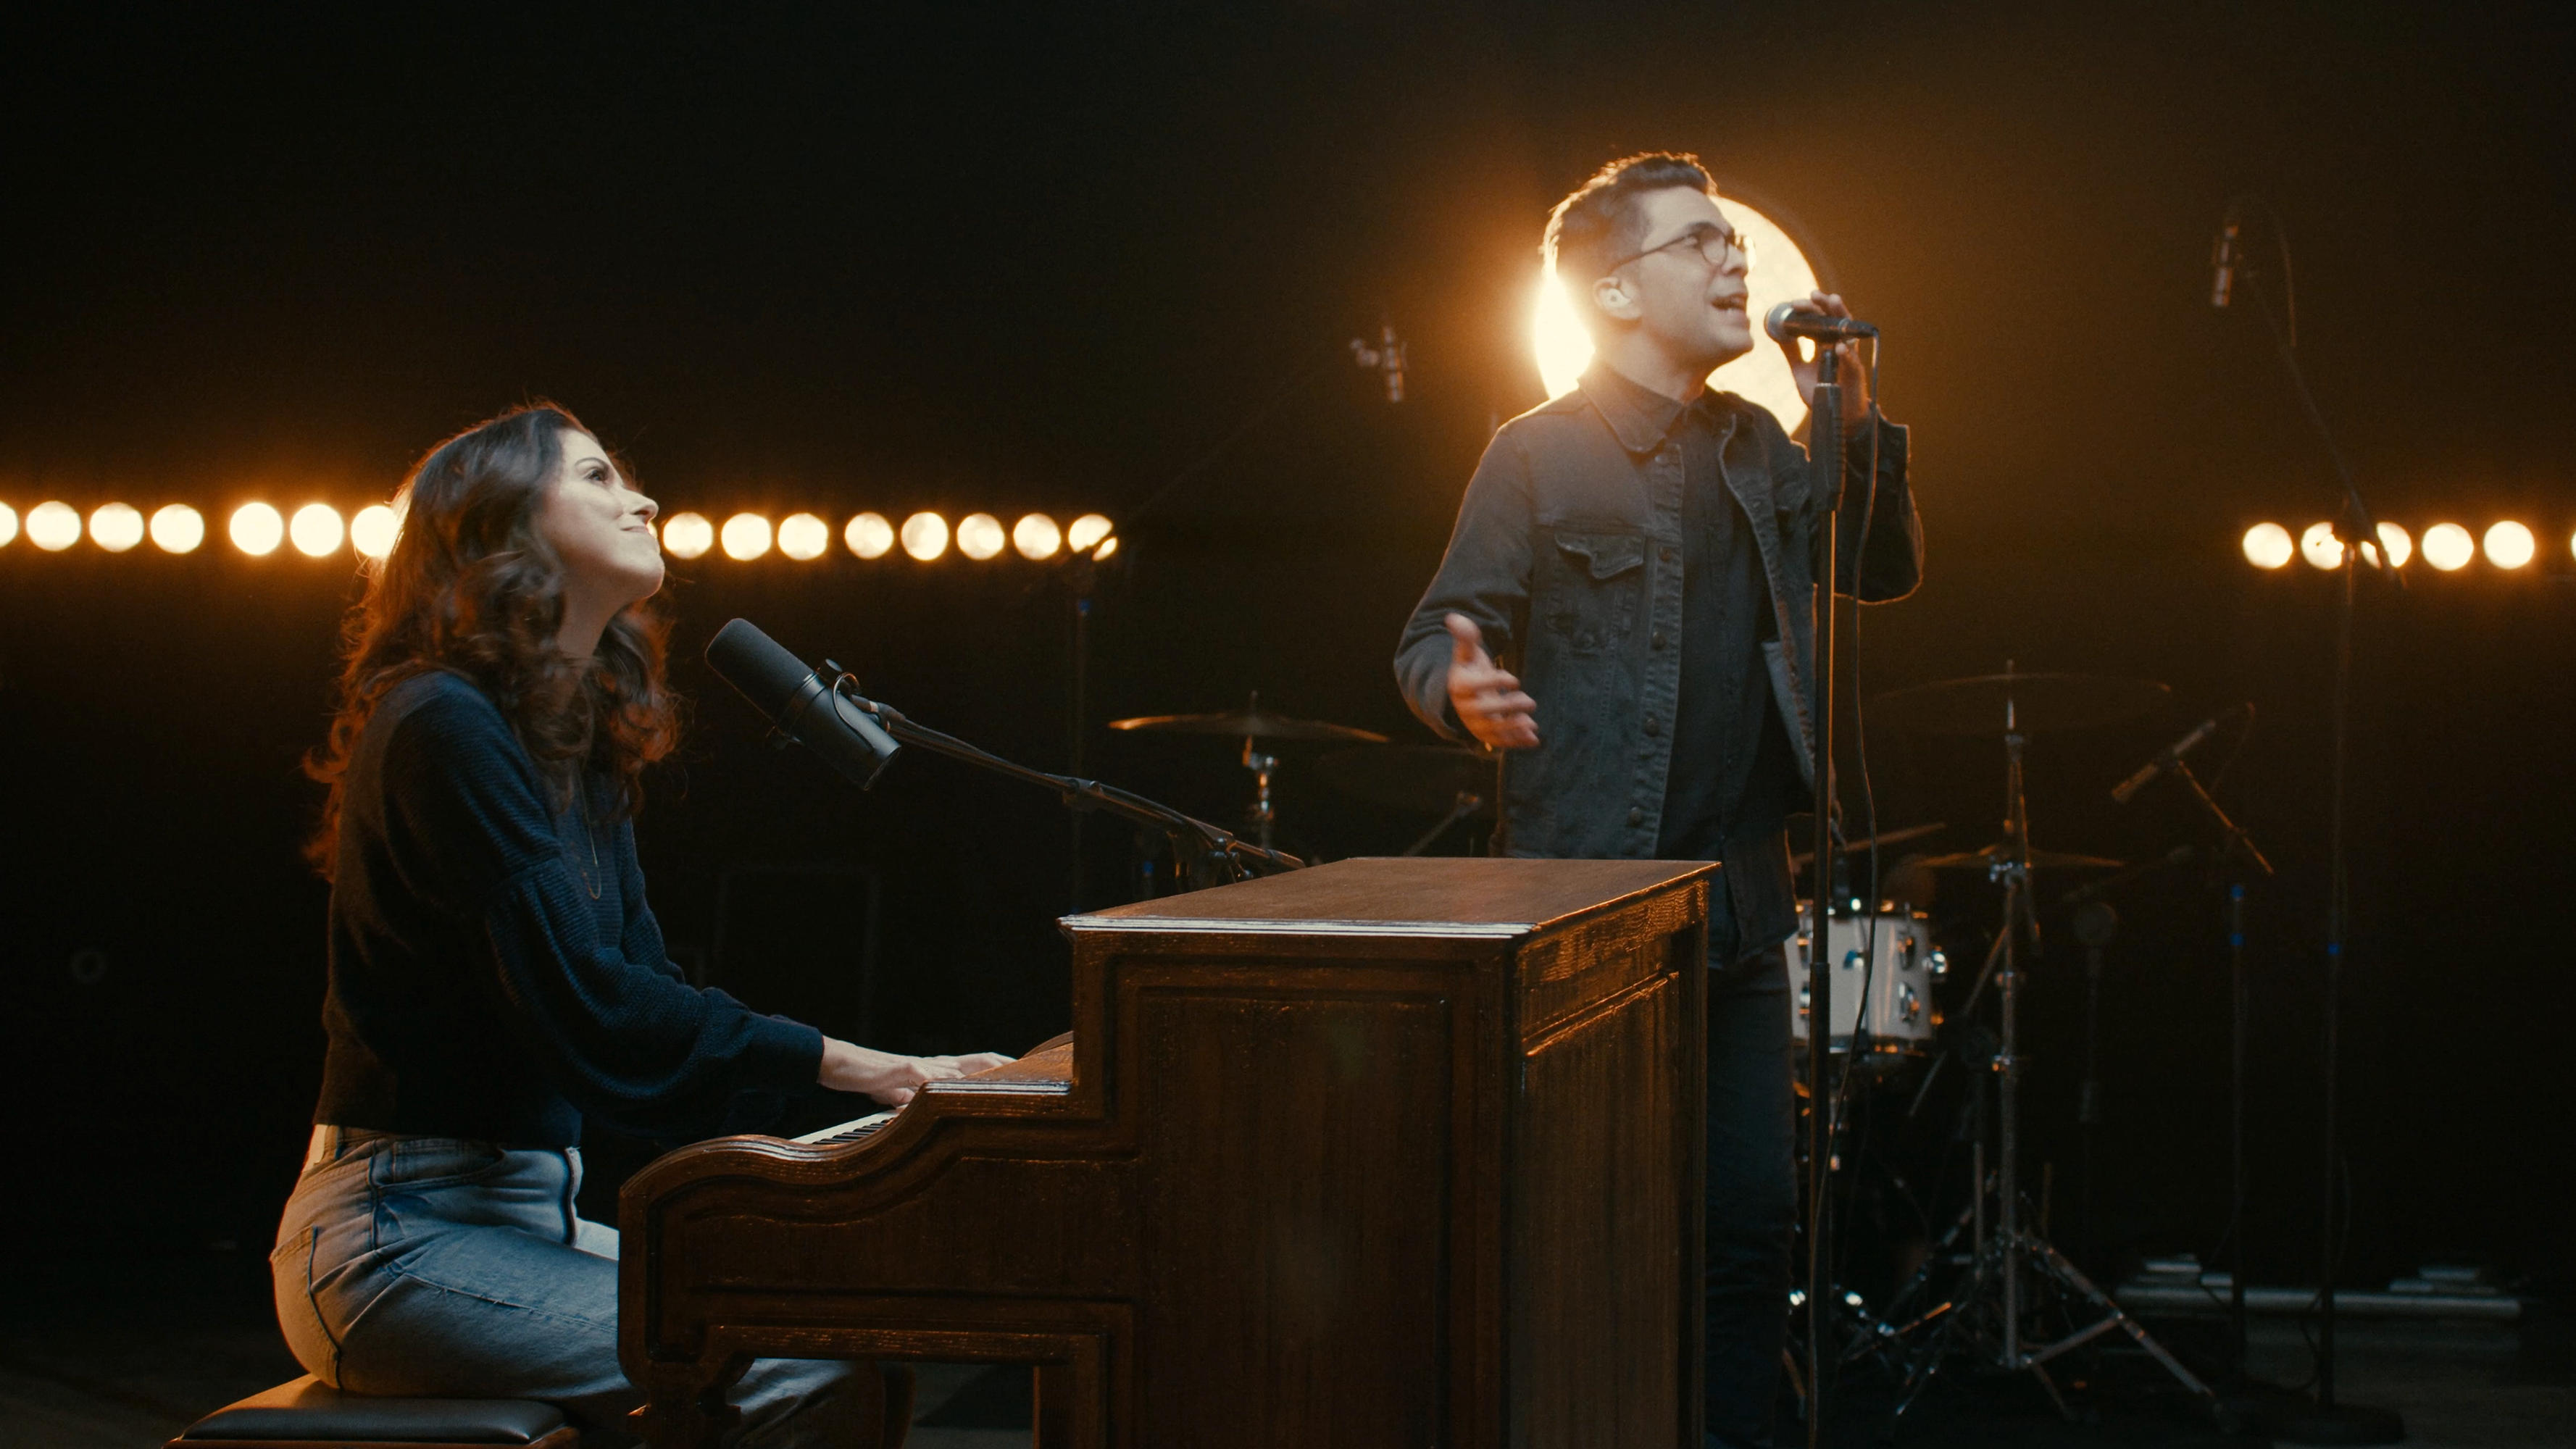 Rachel Novaes e Paulo César Baruk cantam sobre o amor de Deus em novo single